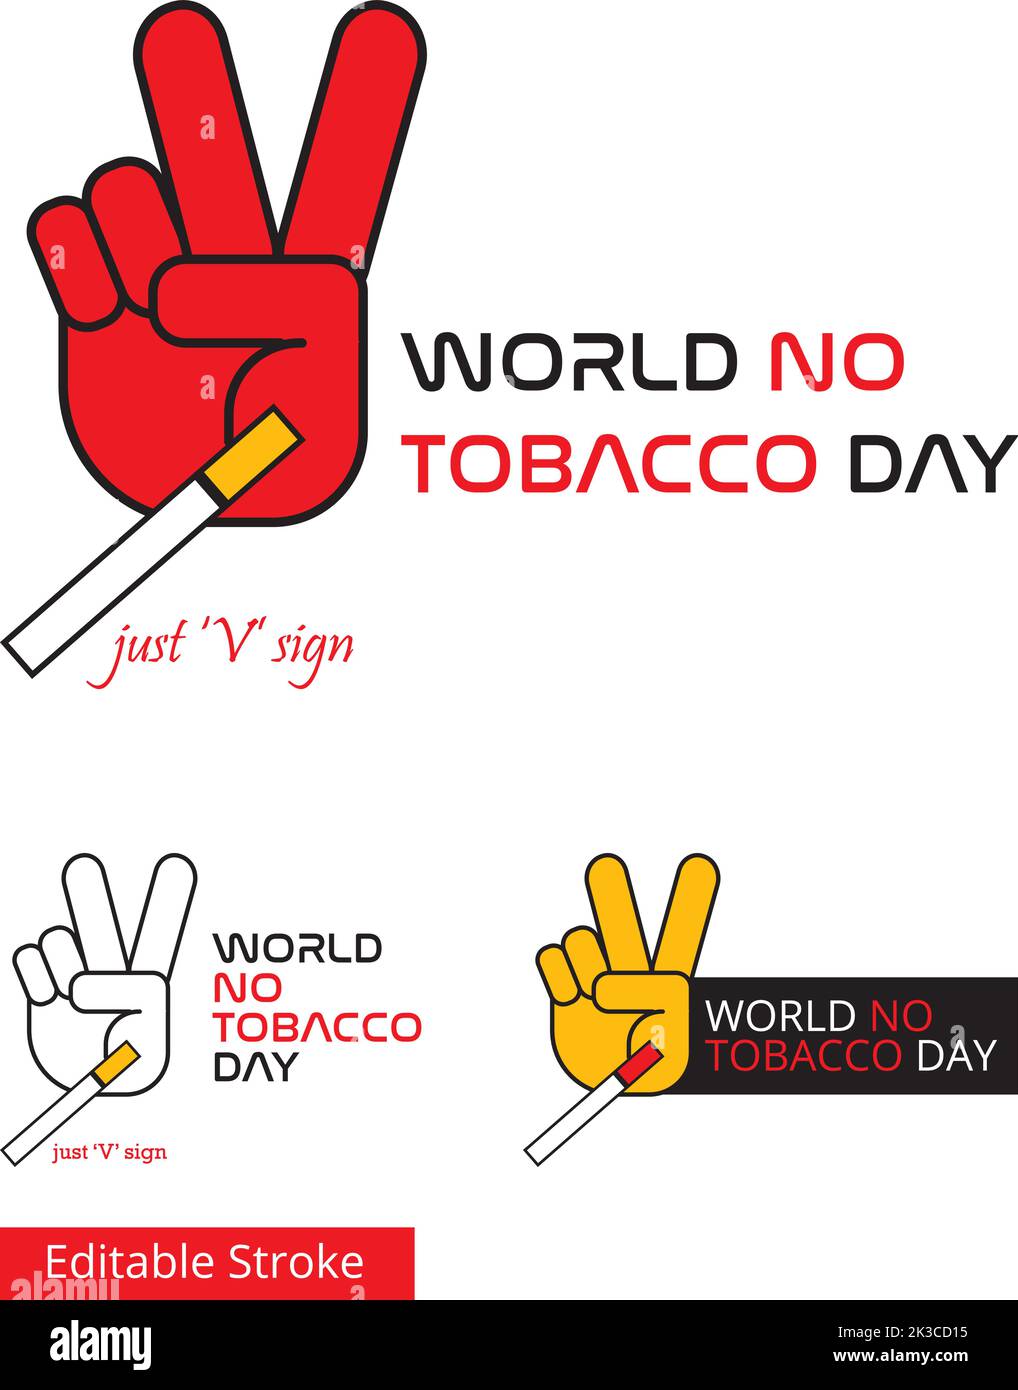 Eine Hand mit V-Zeichen, so dass die Zigarette von den Fingern herunterfällt. Eine kreative Idee für illustrieren Welt kein Tabak Tag 31. Mai. Stock Vektor